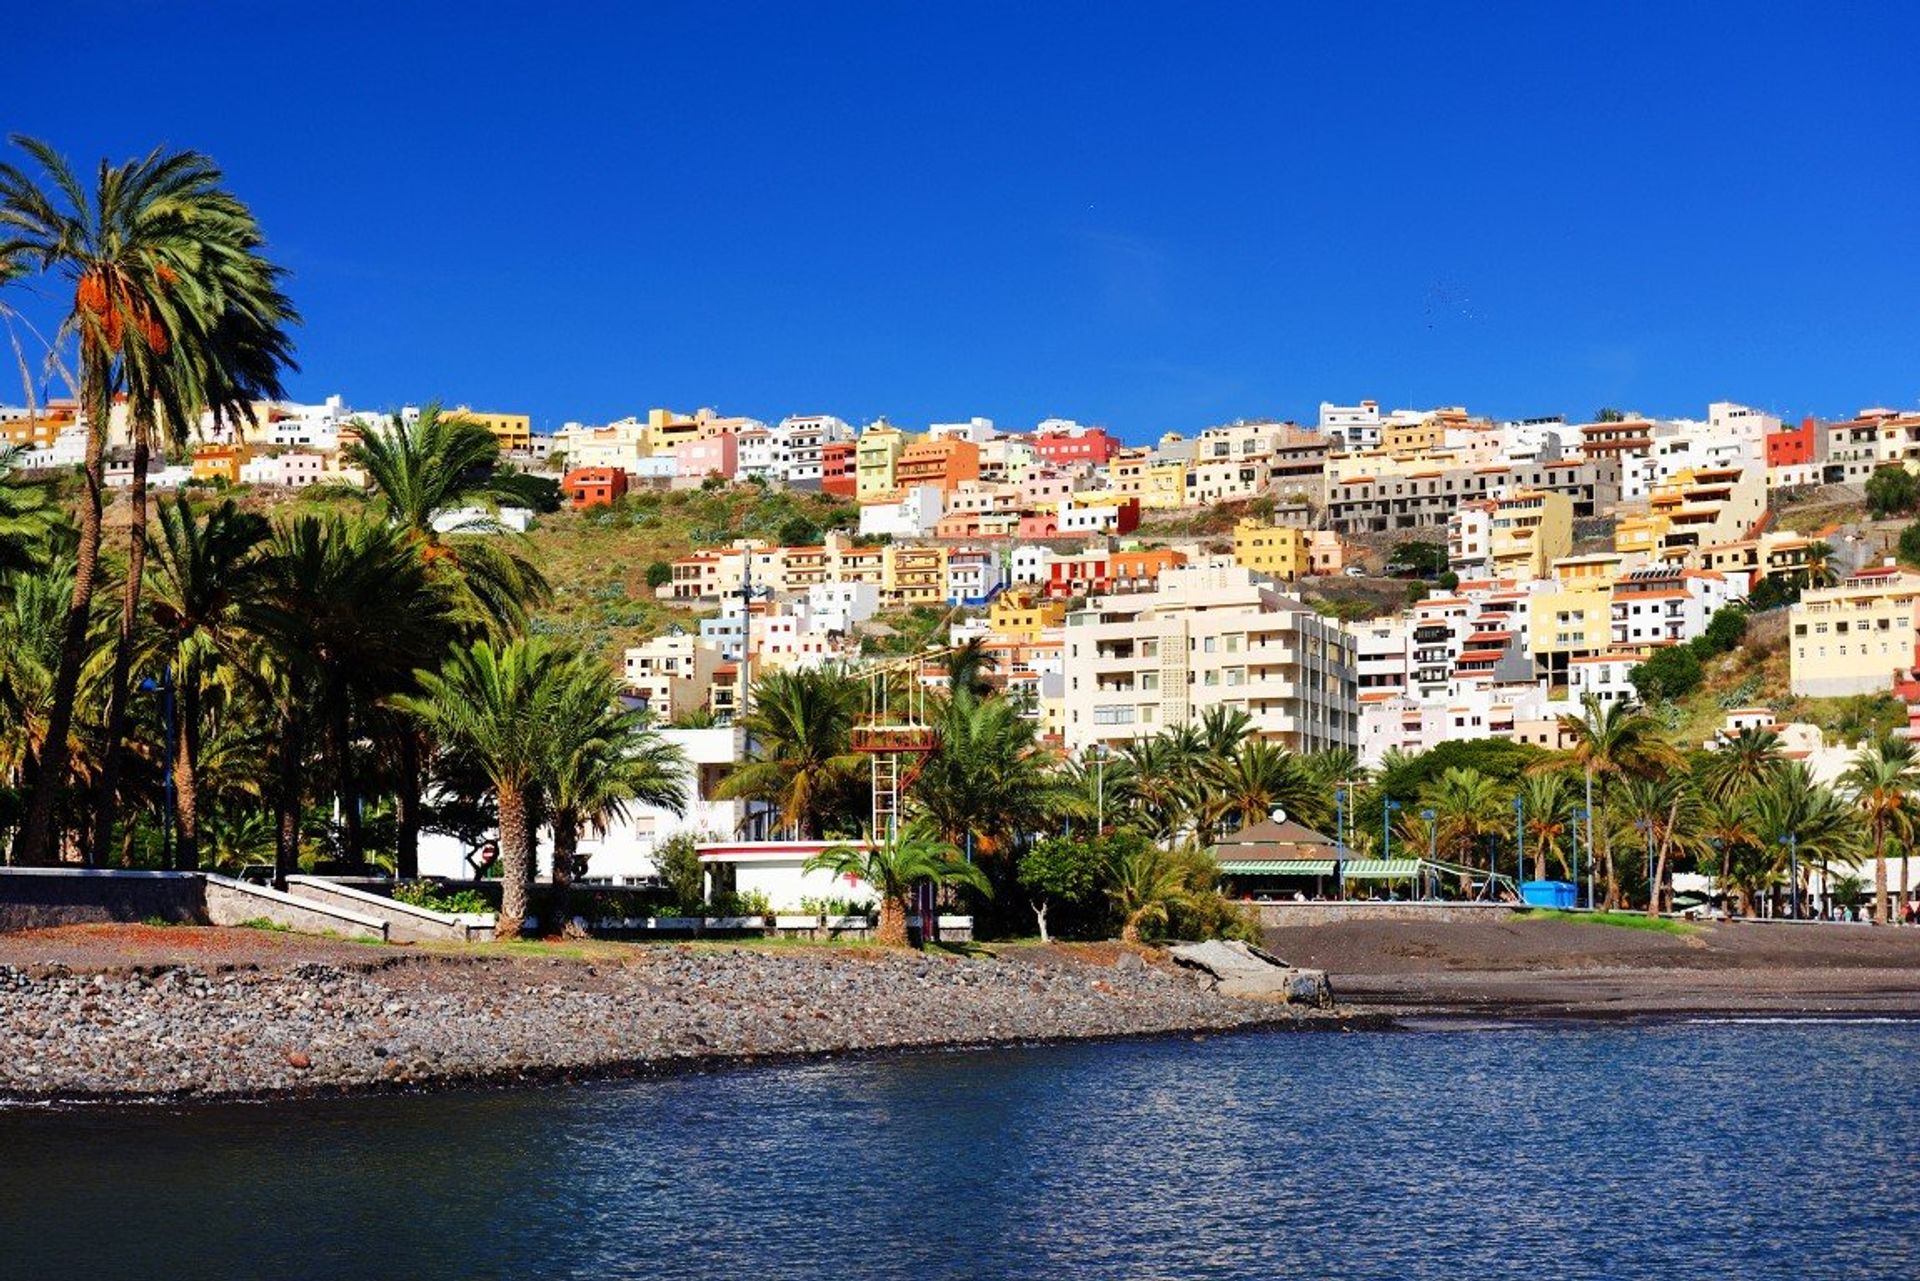 The capital has 2 beautiful beaches; San Sebastian and La Cueva